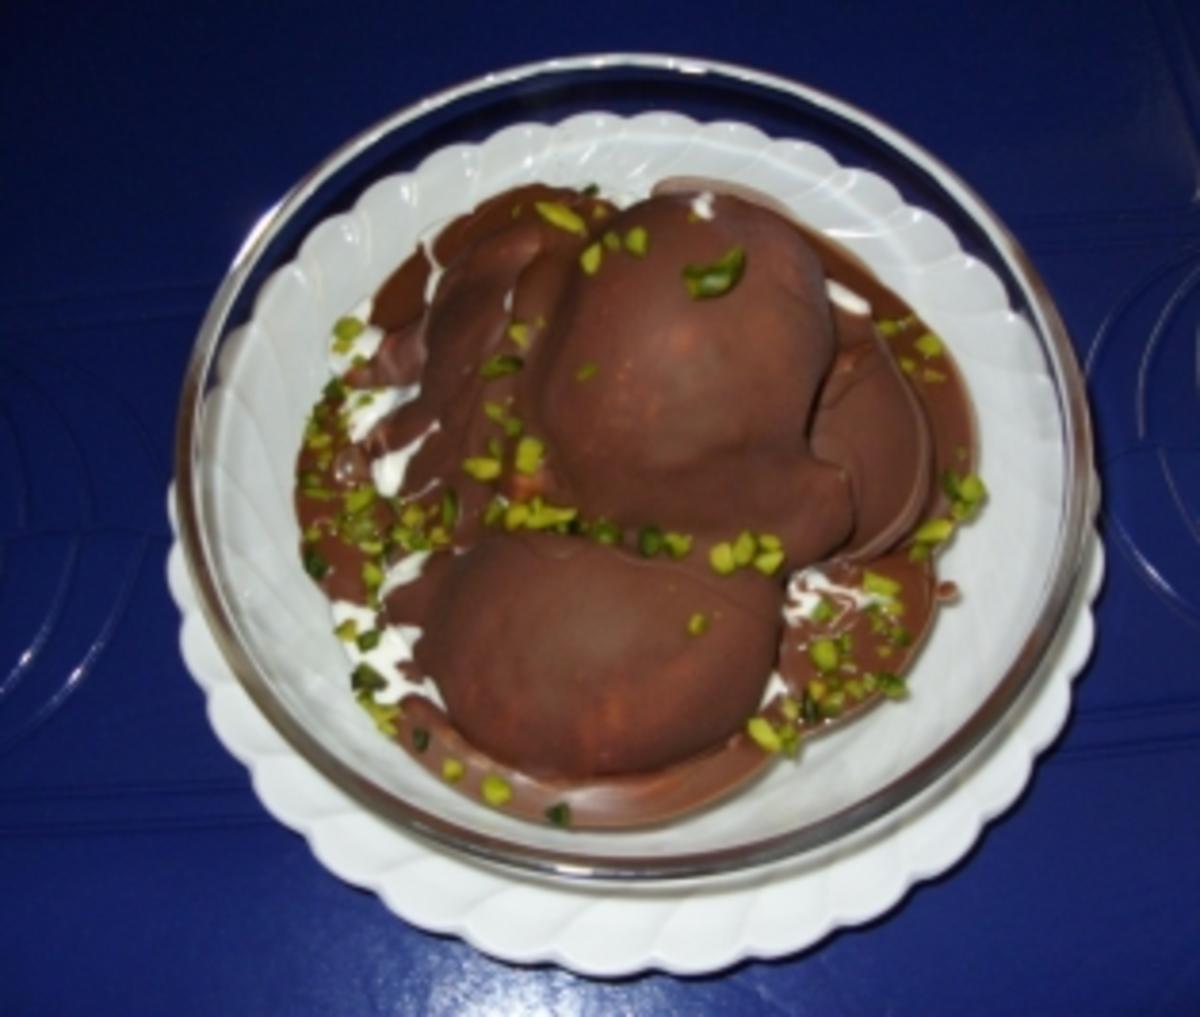 Joghurt-Sahne-Eis mit Schokoladenüberzug und Pistazienkerne - Rezept